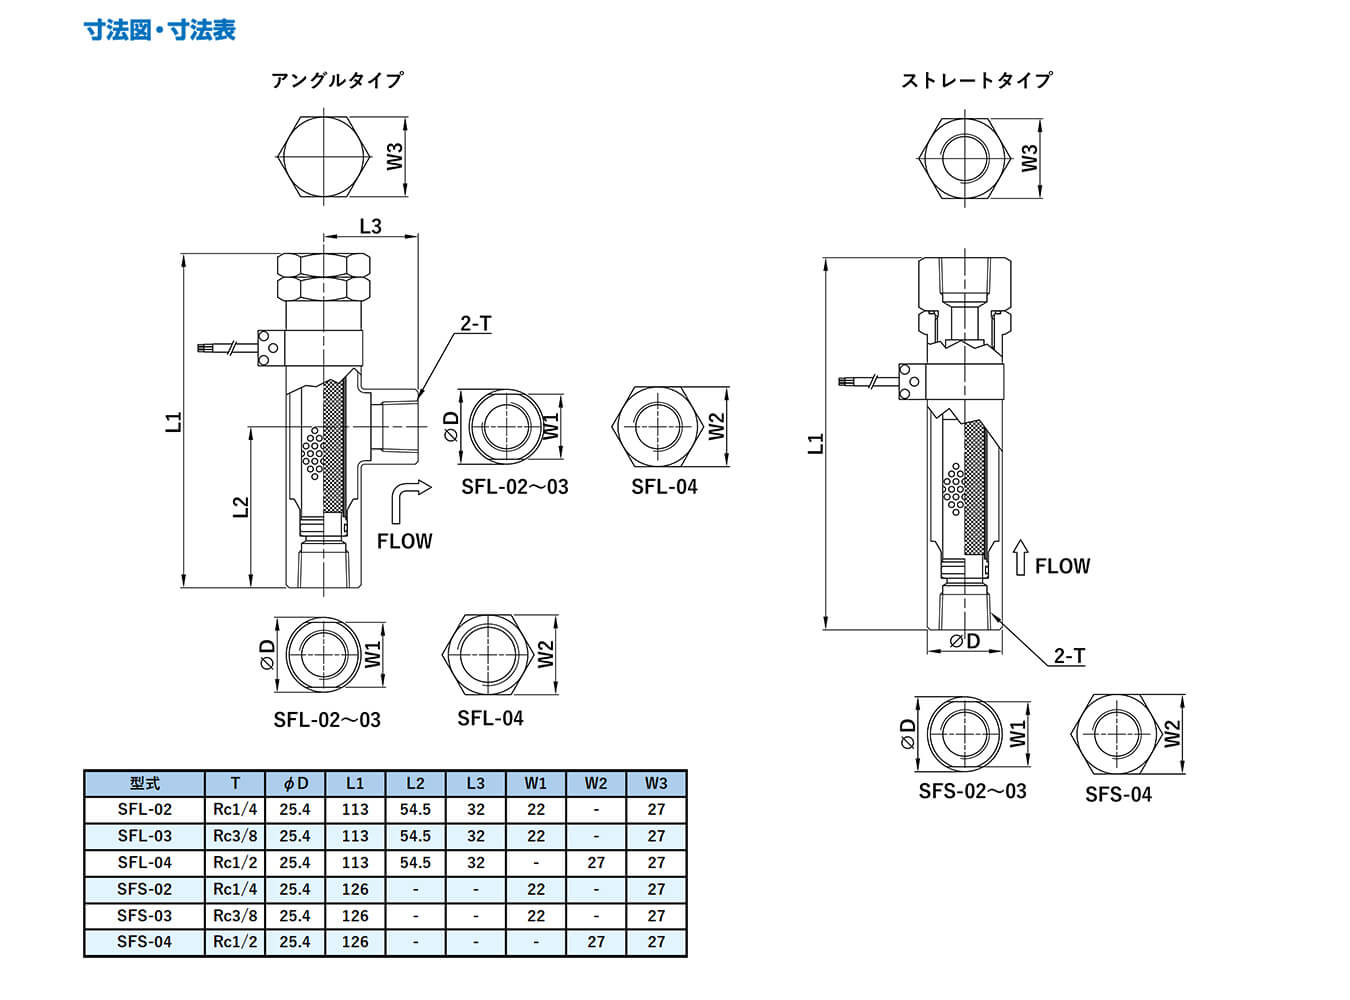 株式会社ツカサの製品「センサー搭載 小型ラインフィルタ」の設計図